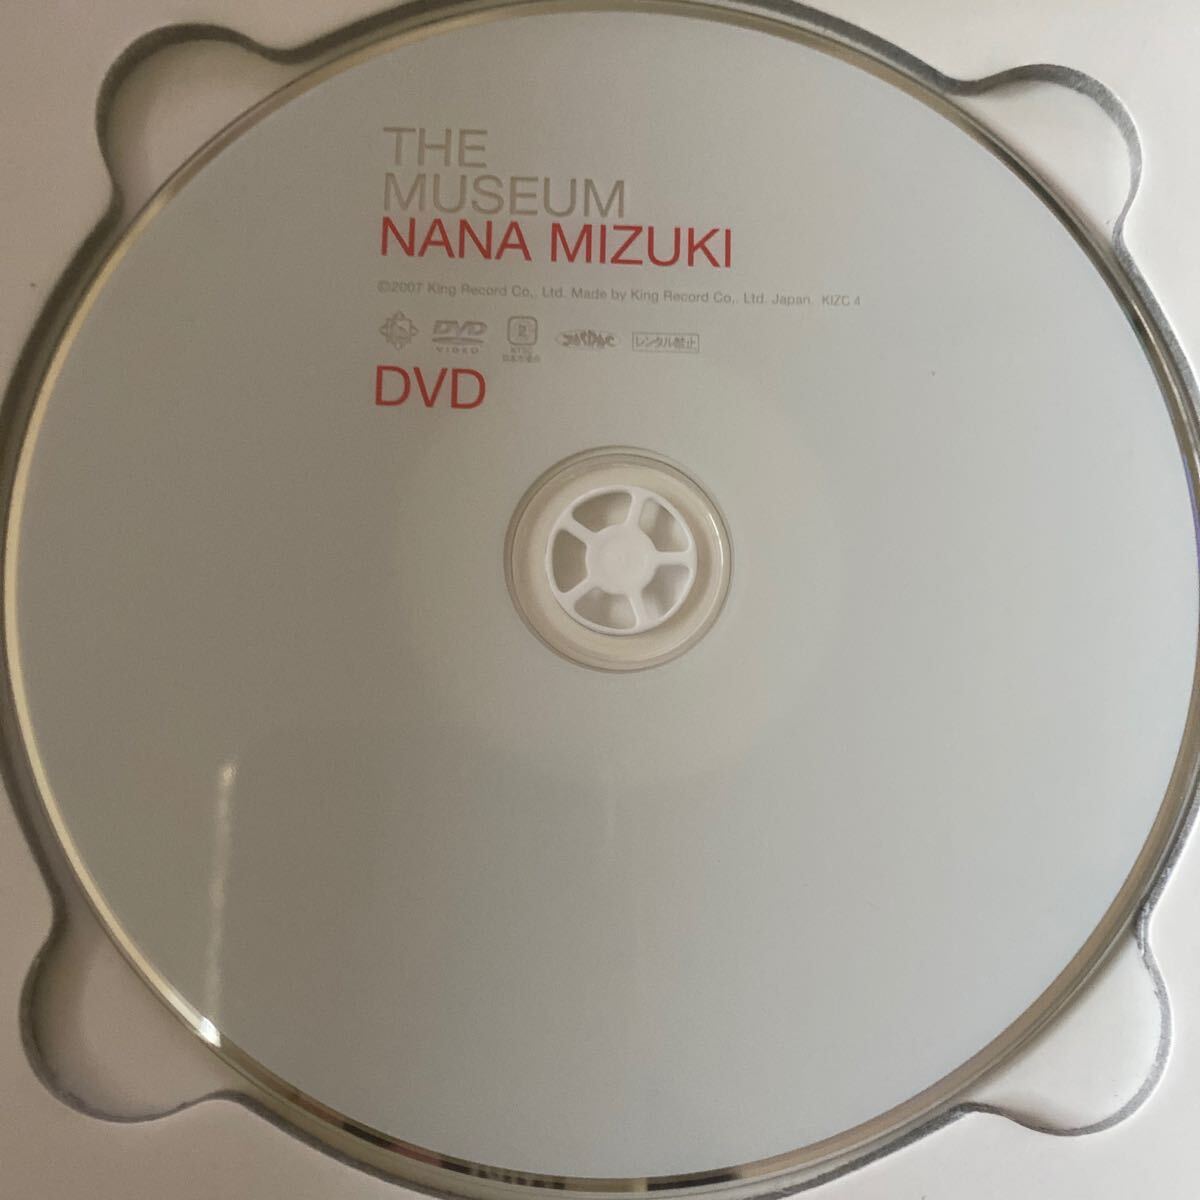  water ...THE MUSEUM NANA MIZUKI CD DVD